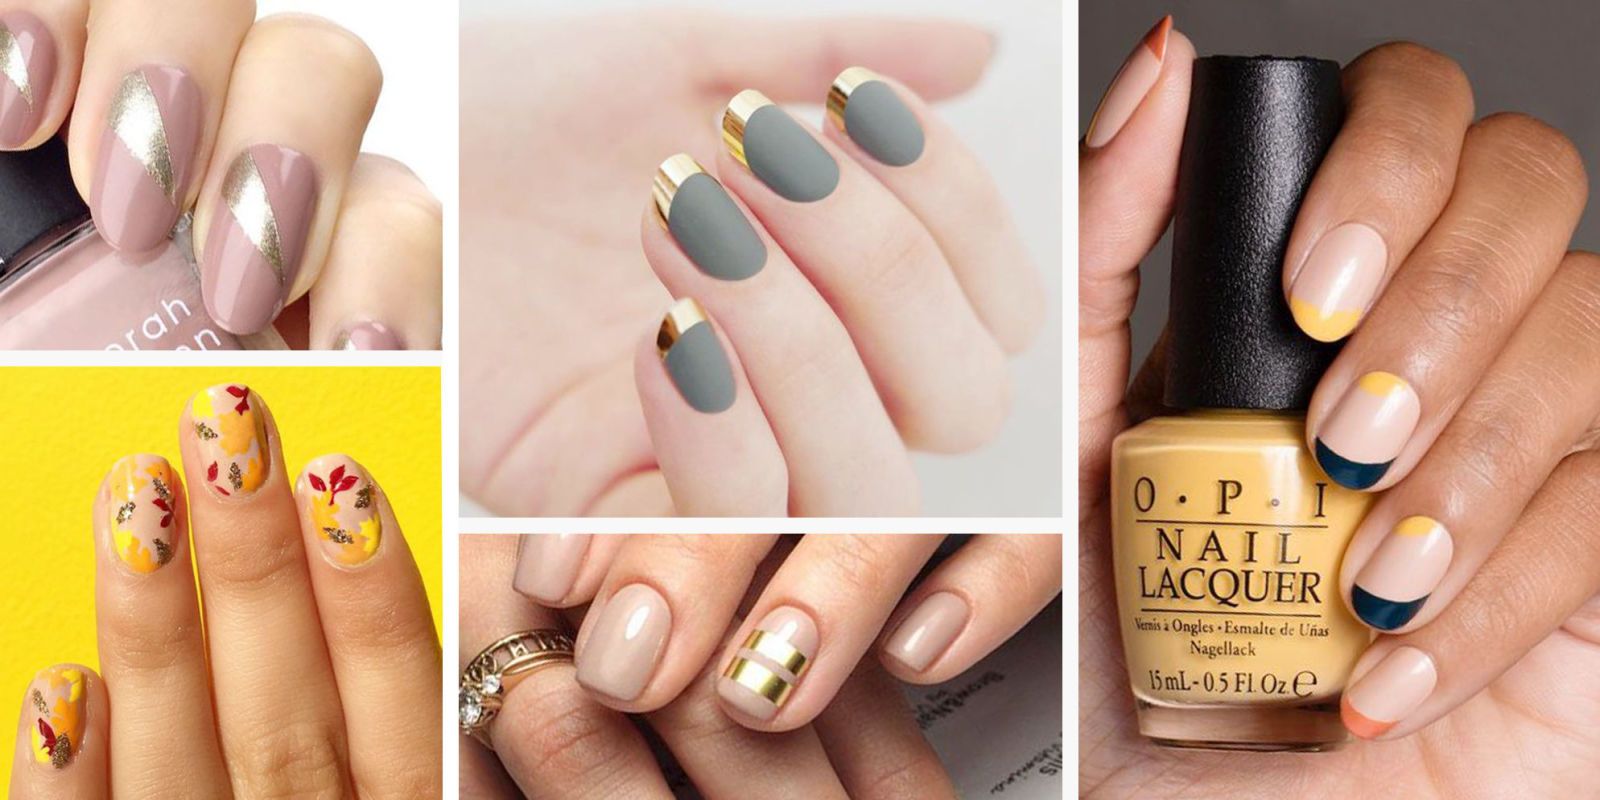 chevron-nails-with-black-and-yellow-nail-polish - SoNailicious